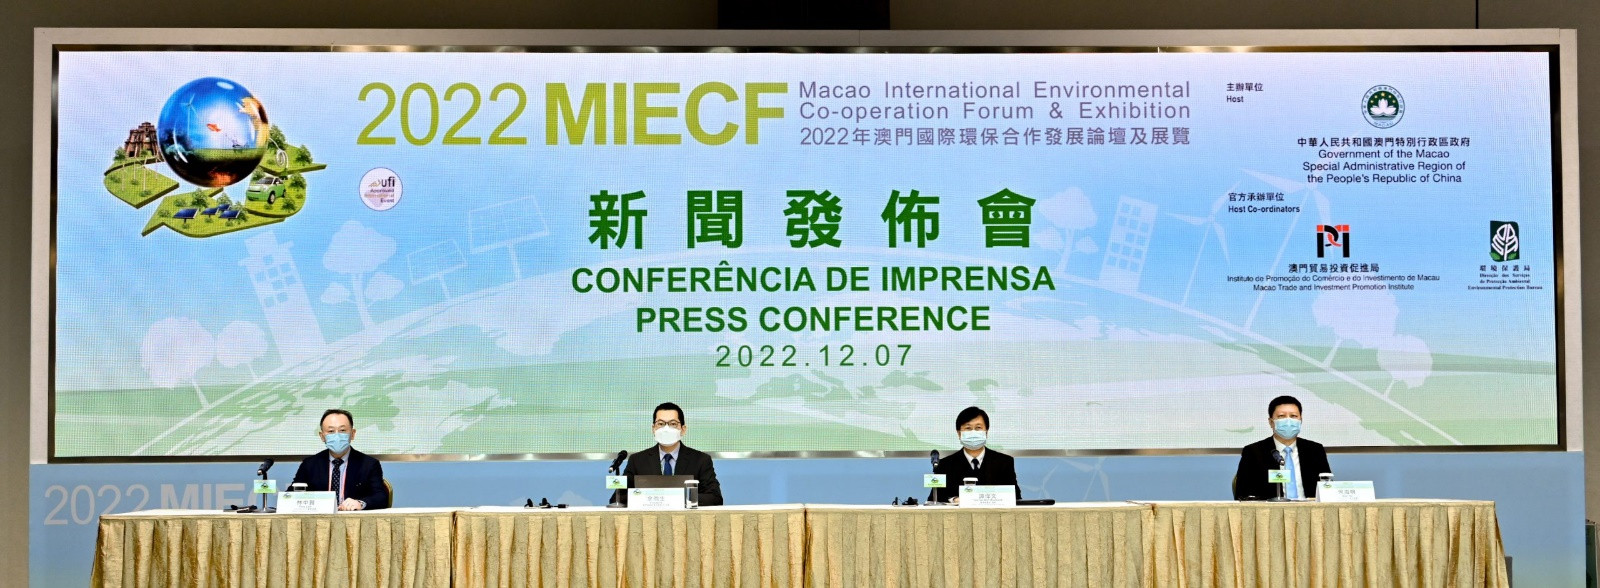 2022MIECF将于12月9日开幕 携手“迈进双碳目标”